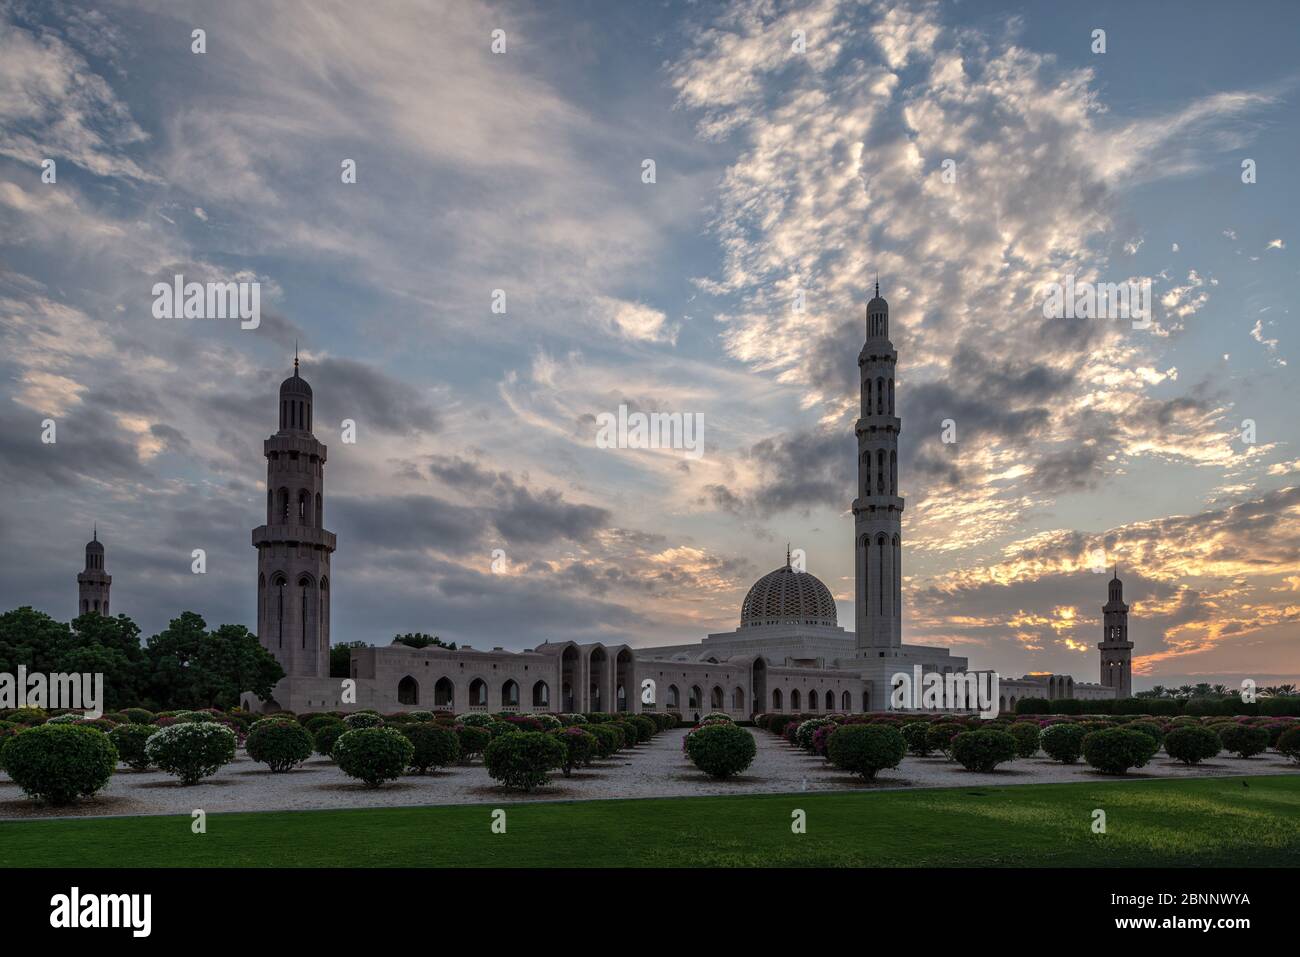 Moschea, casa di preghiera, cupola, minareto, parco, giardino, tramonto, cielo serale, nuvole, paesaggio nuvoloso, alberi Foto Stock